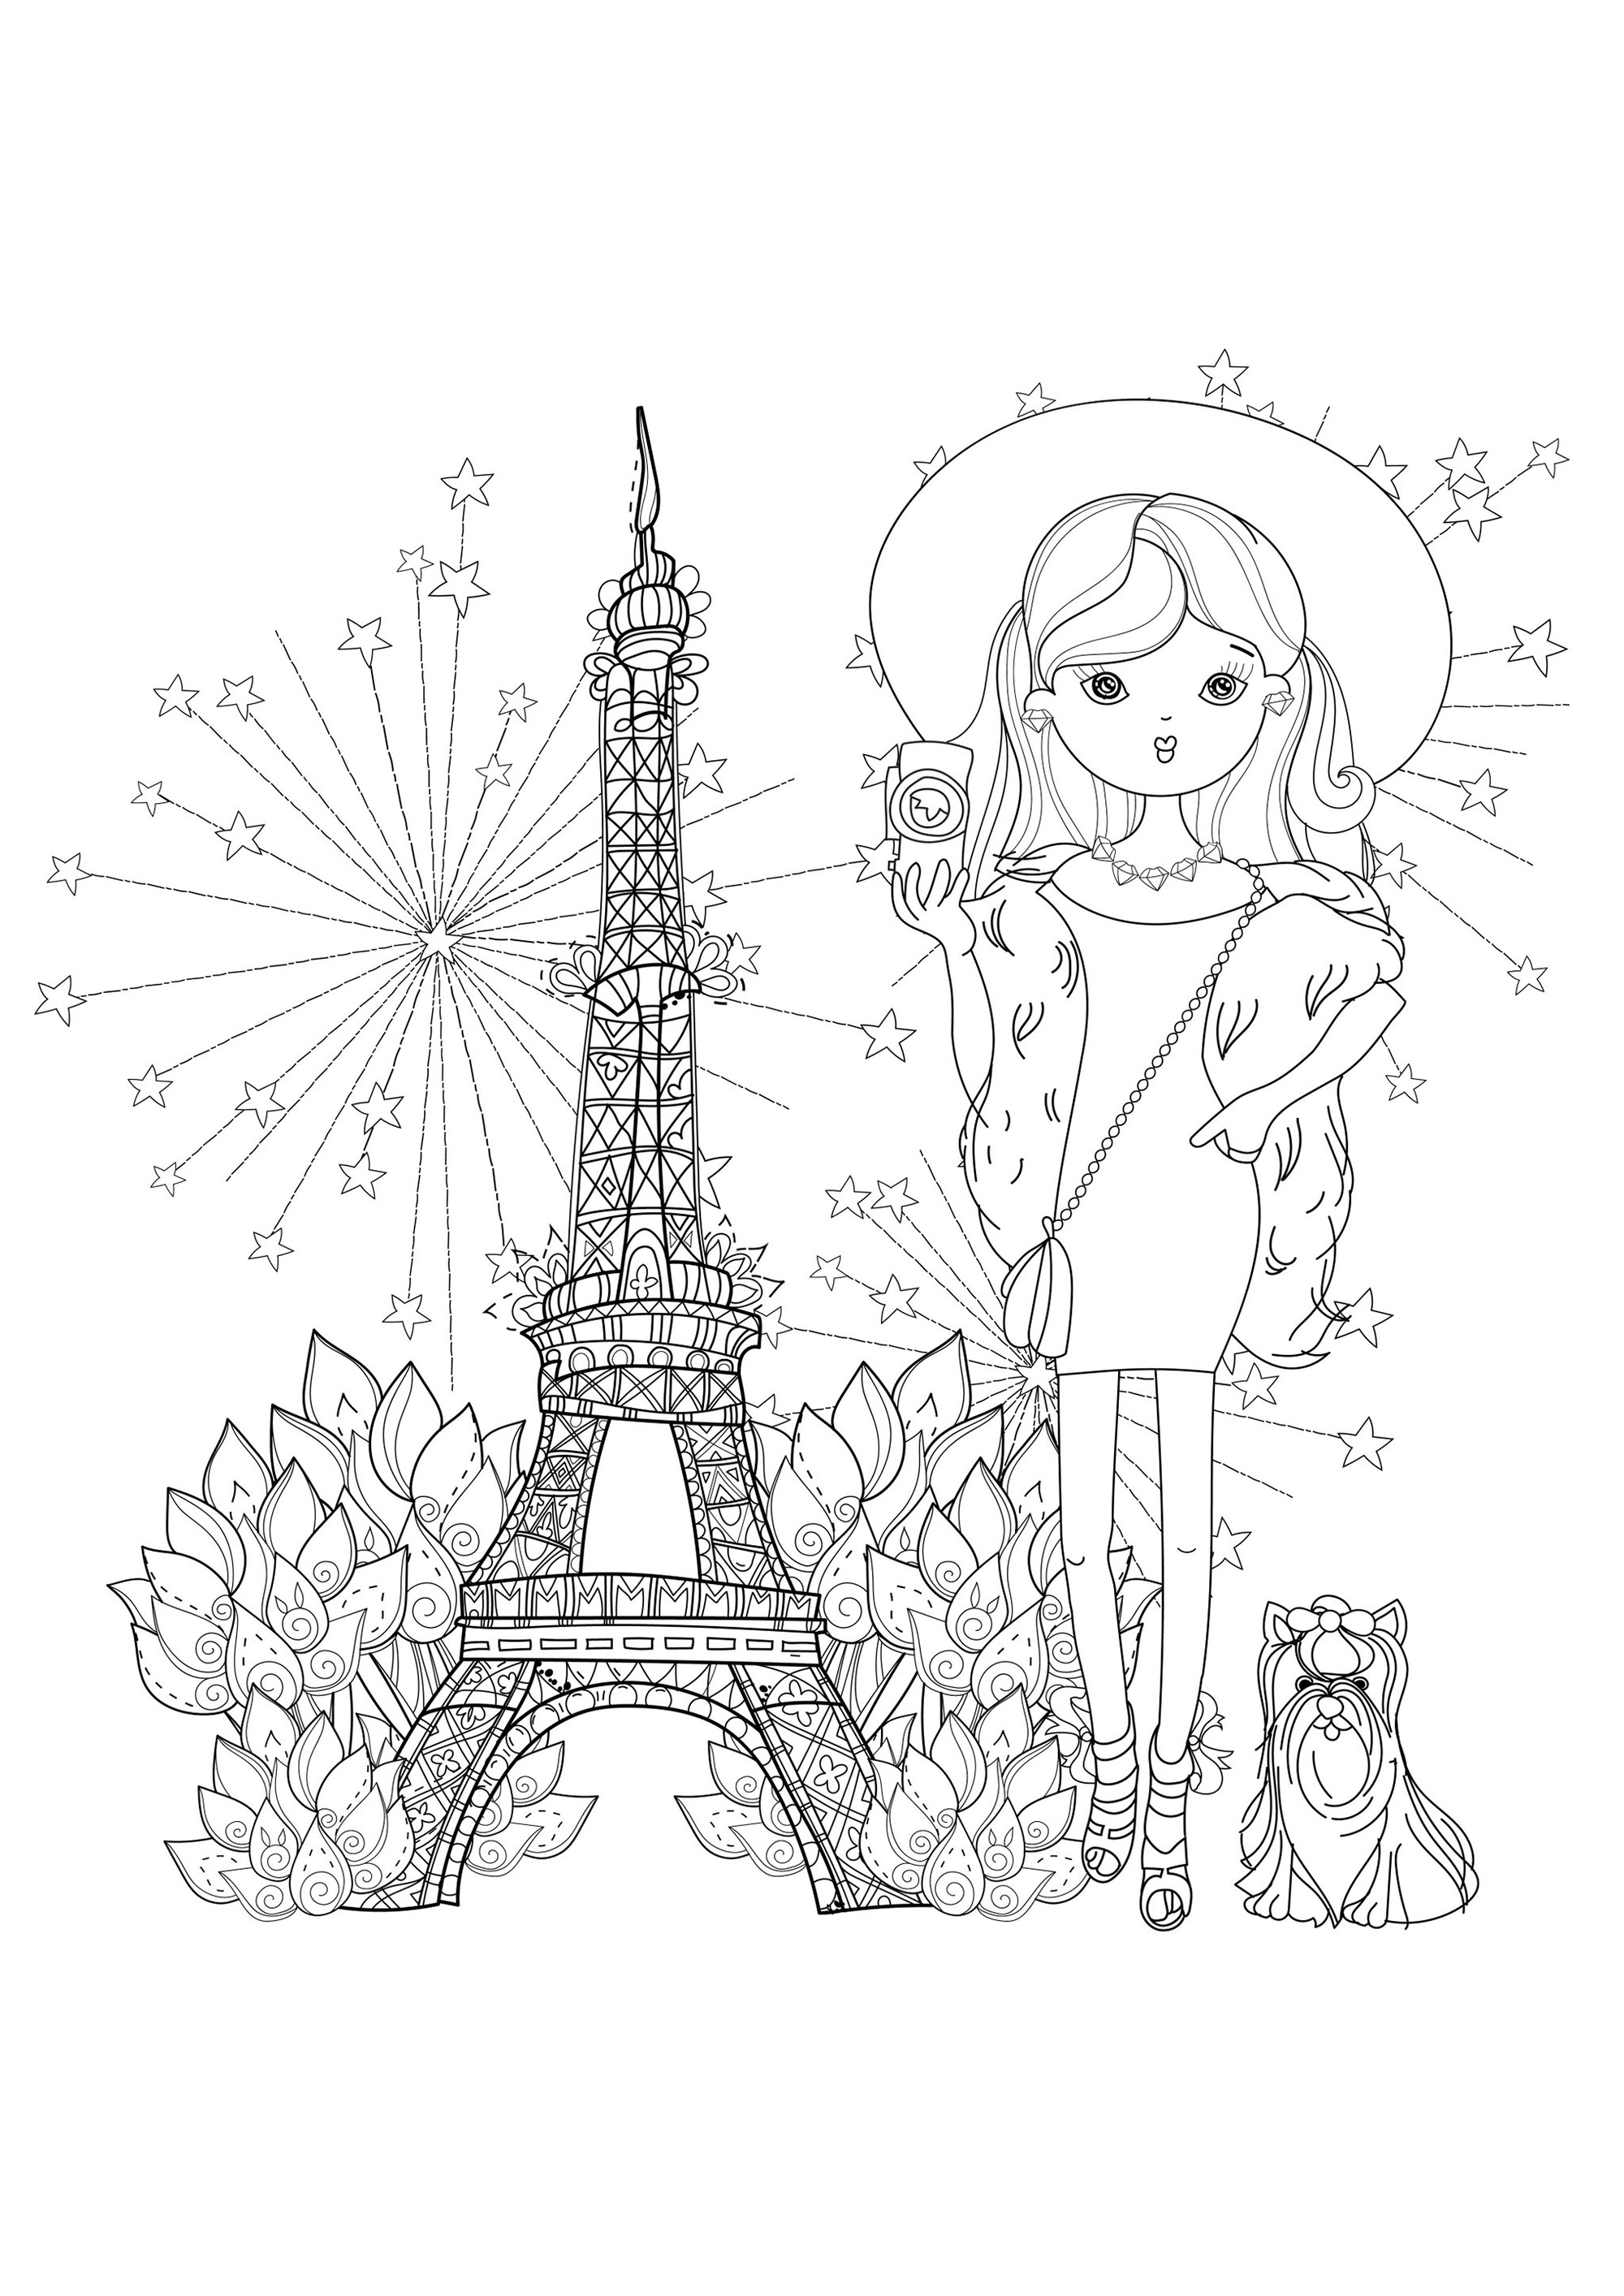 Giovane viaggiatrice con il suo cagnolino e la Torre Eiffel. Costruita nel 1889 per l'Esposizione Universale, la Torre Eiffel (Tour Eiffel) è diventata il simbolo principale di Parigi e della Francia, Fonte : 123rf   Artista : Yazzik